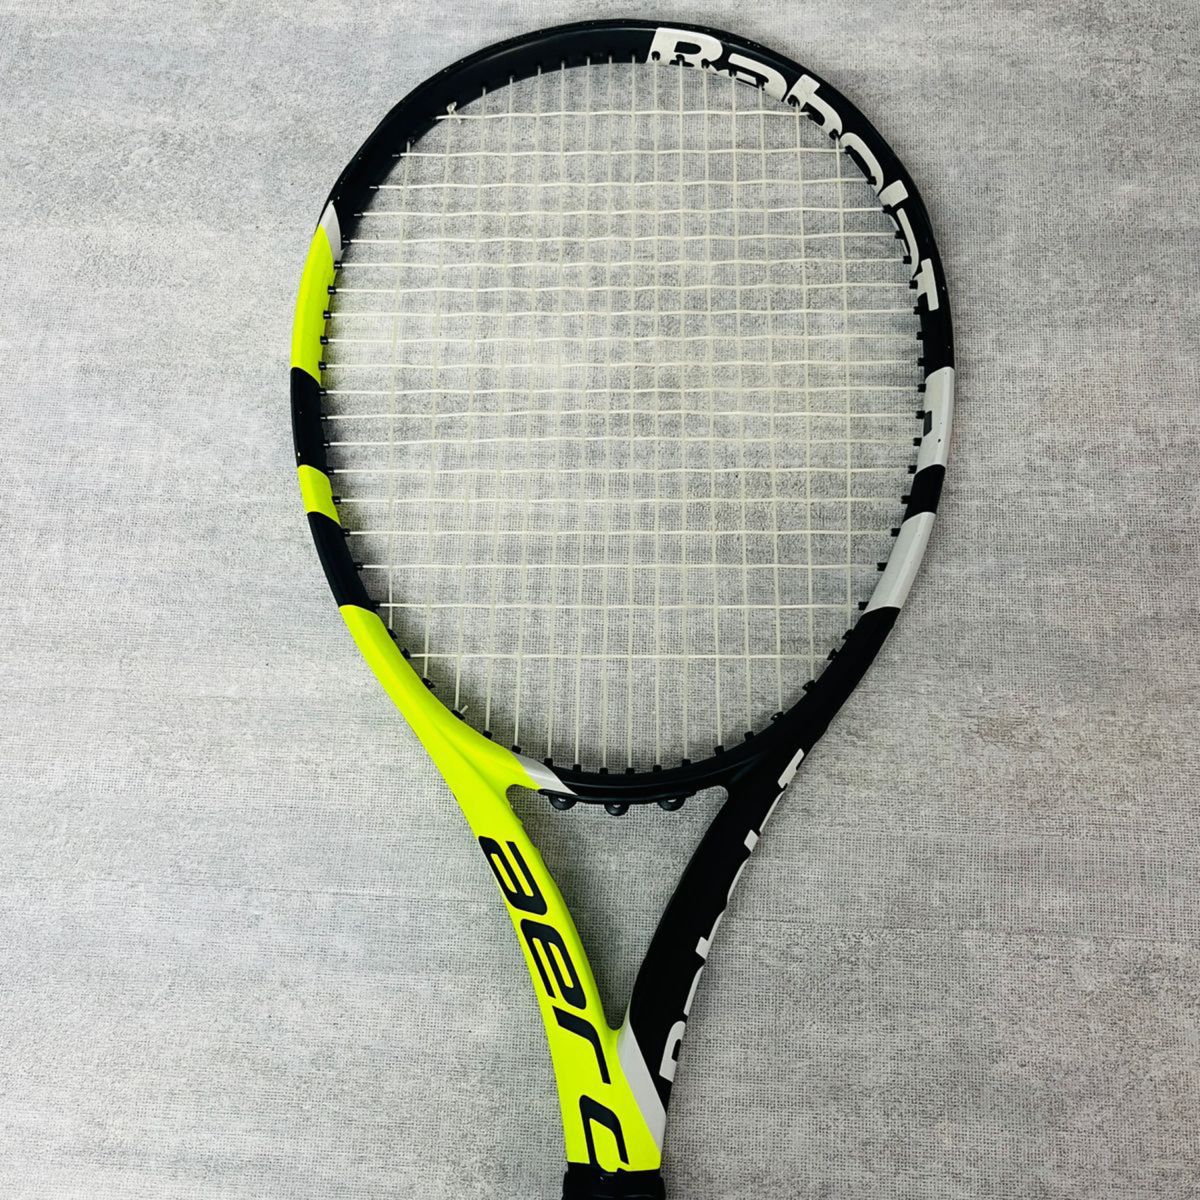 【良品/グリップ新品】Babolat バボラ Aero アエロ G #2 硬式テニスラケット